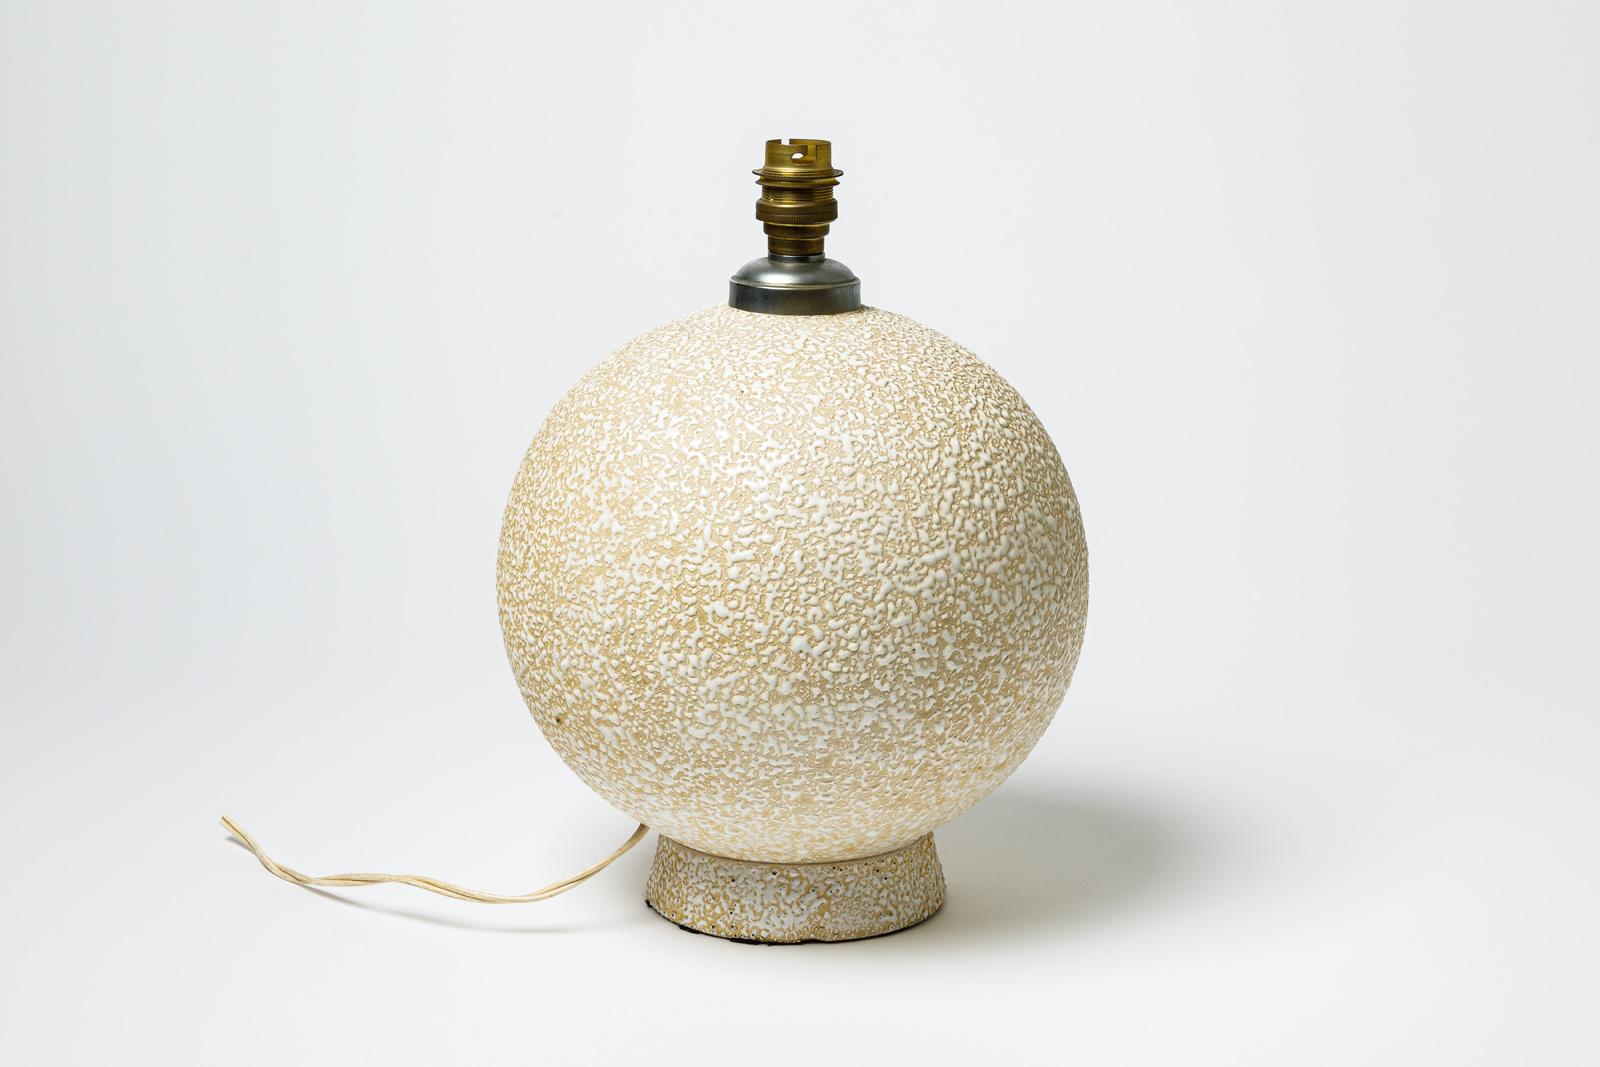 Lampe de table en céramique émaillée beige et blanche.
Vers 1920-1930.
H : 10.2' x 7.9' pouces (céramique uniquement).
Vendu avec un système électrique européen.